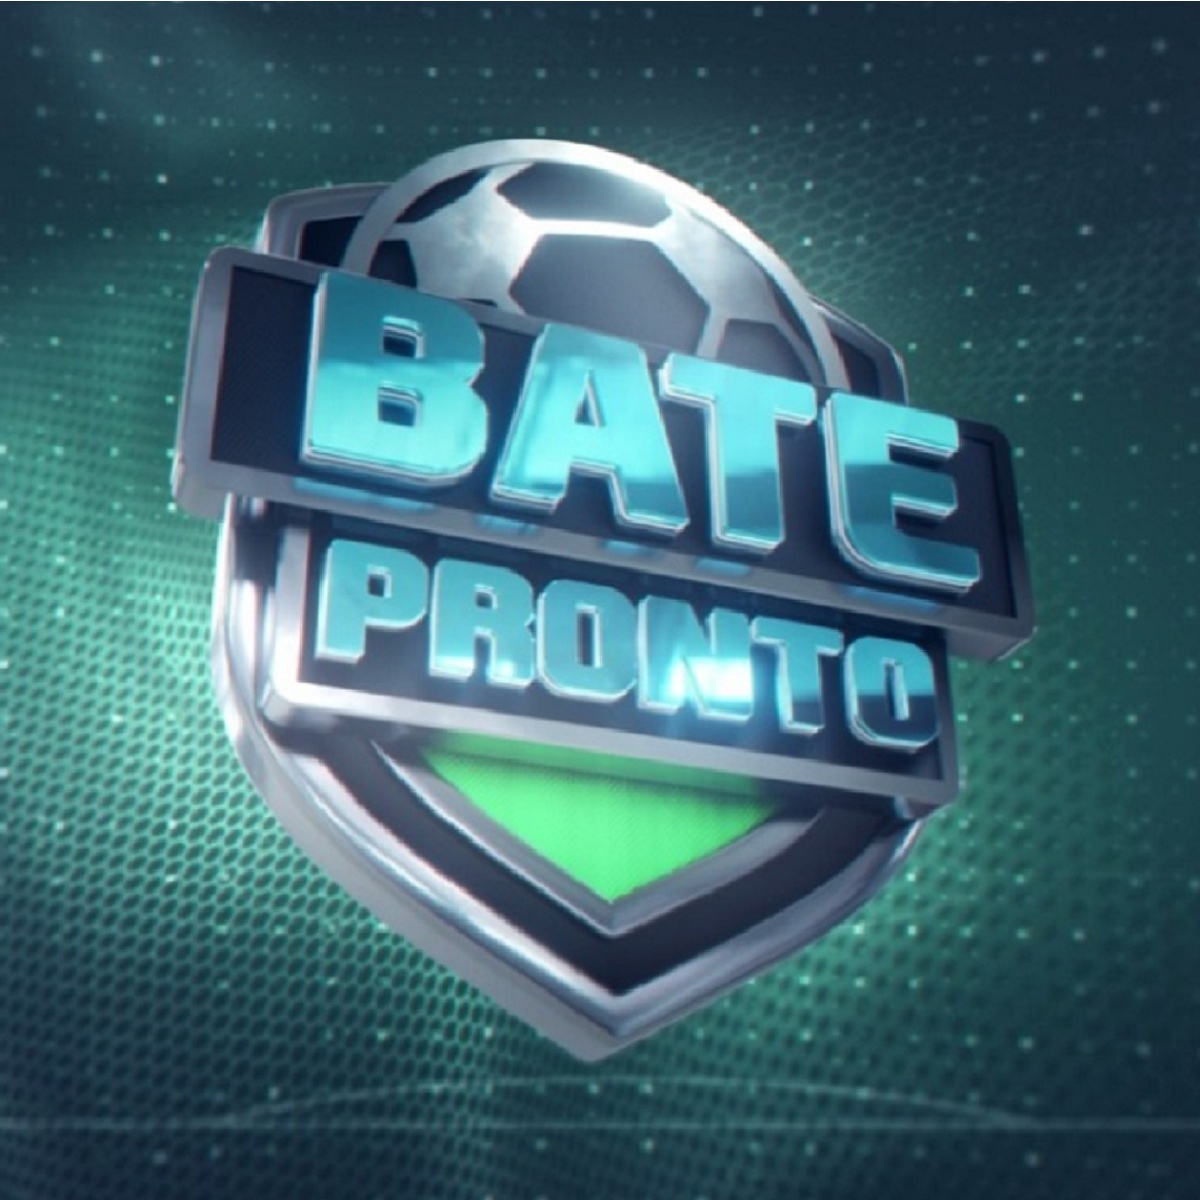 Bate-Pronto - 13/04/2022 - IMPIEDOSO, Palmeiras ENFIA 8 a 1 e CHOCA na Libertadores; Flamengo VENCE